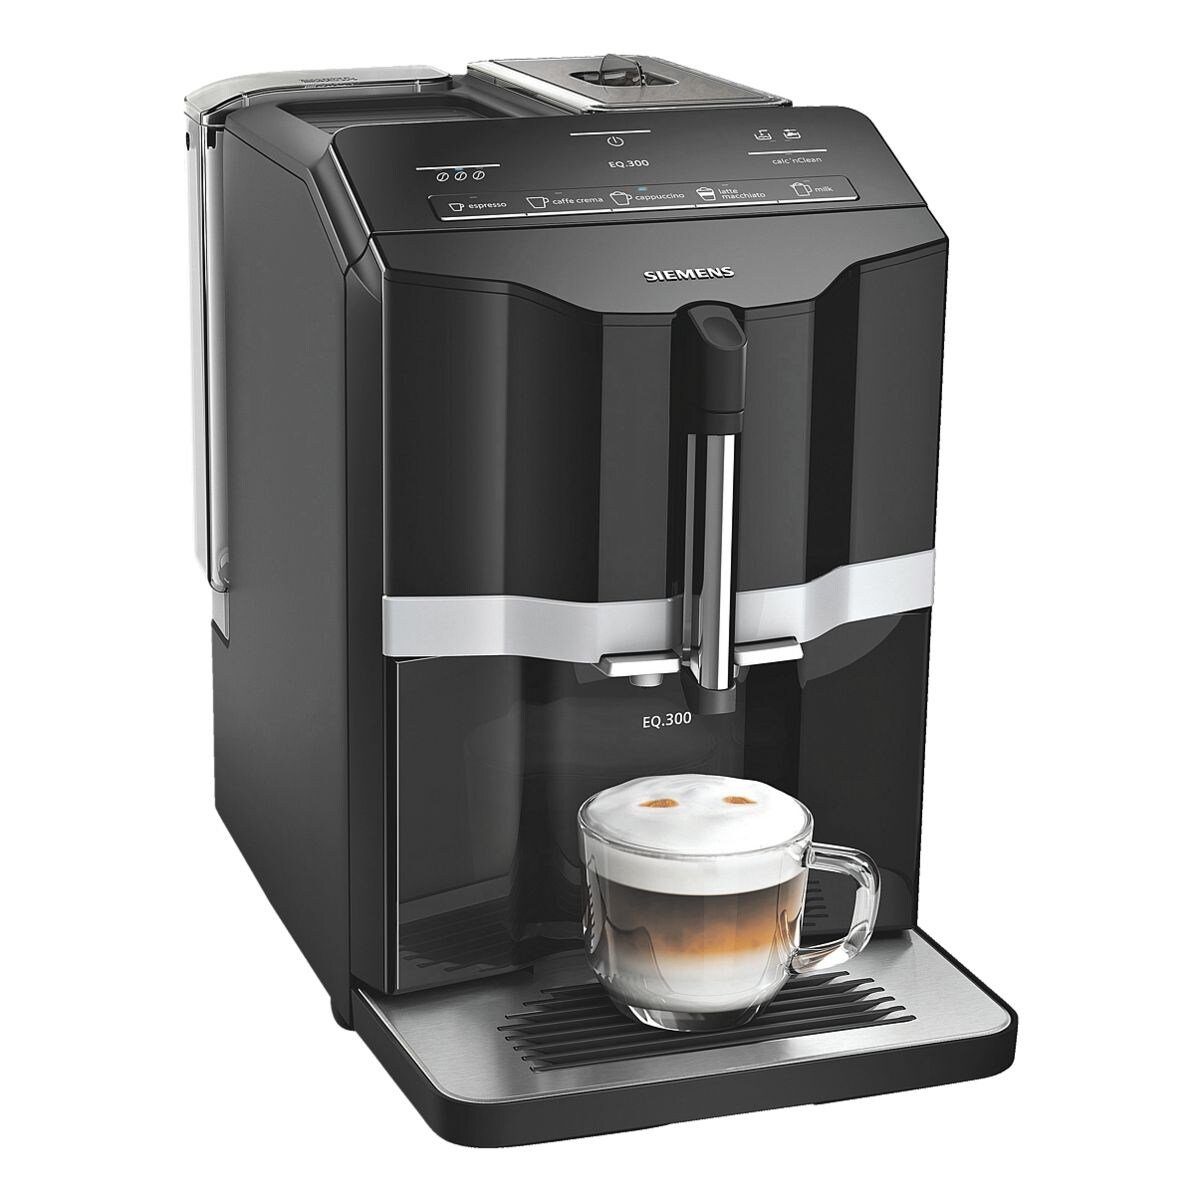 SIEMENS Kaffeevollautomat EQ.300, mit coffeeDirect und oneTouch Funktion, 1300 Watt